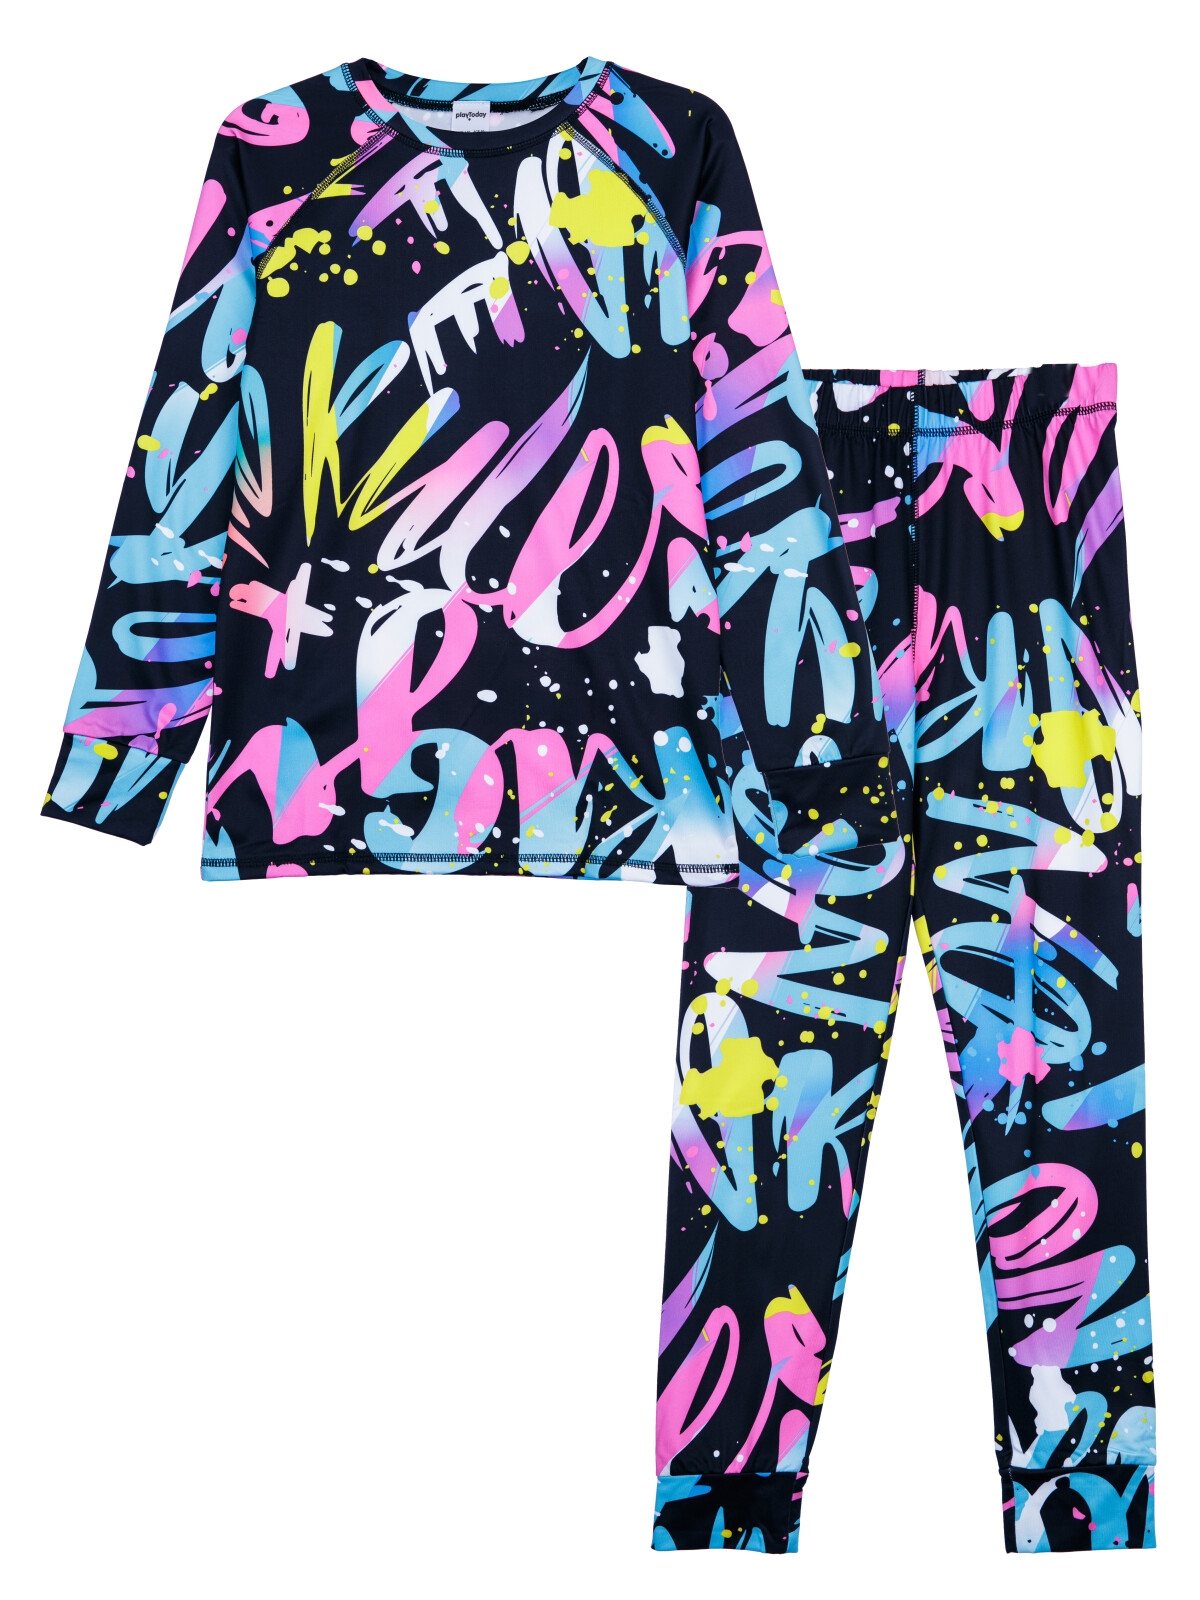 Термокомплект для девочек PlayToday: брюки, толстовка, цветной, 158